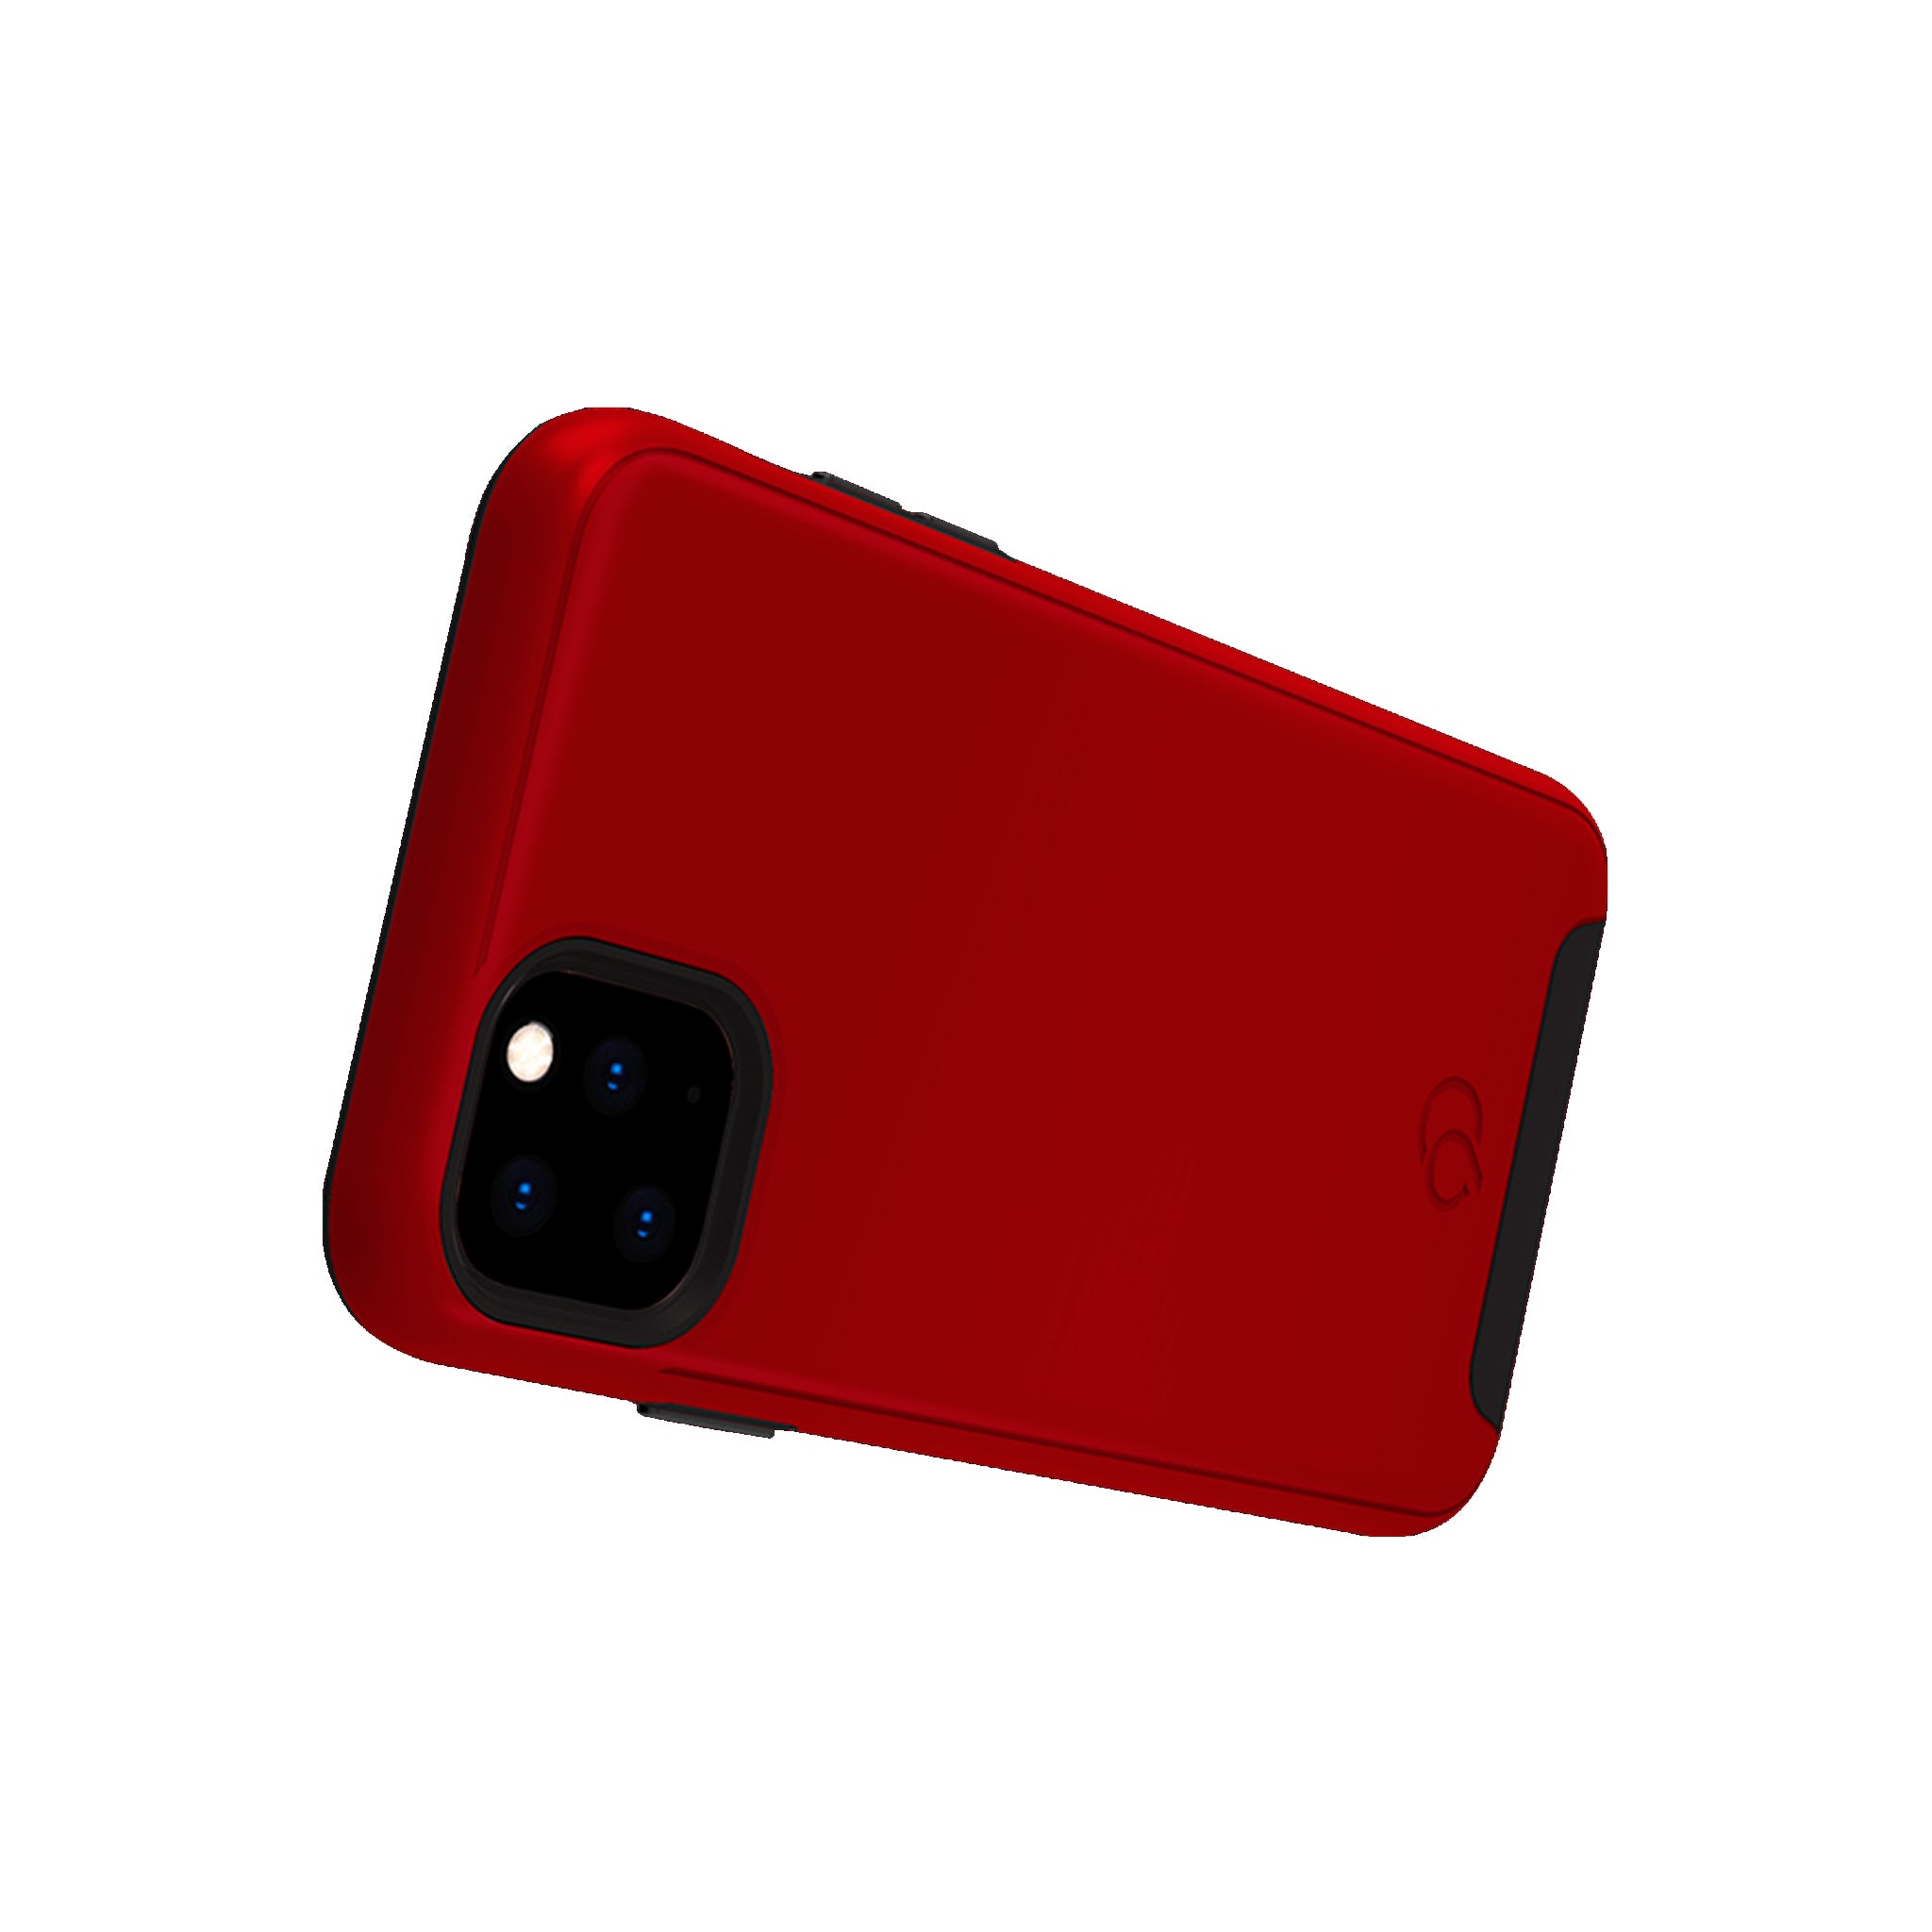 Nimbus9 - Cirrus 2 Case For Apple Iphone 11 Pro Max - Crimson